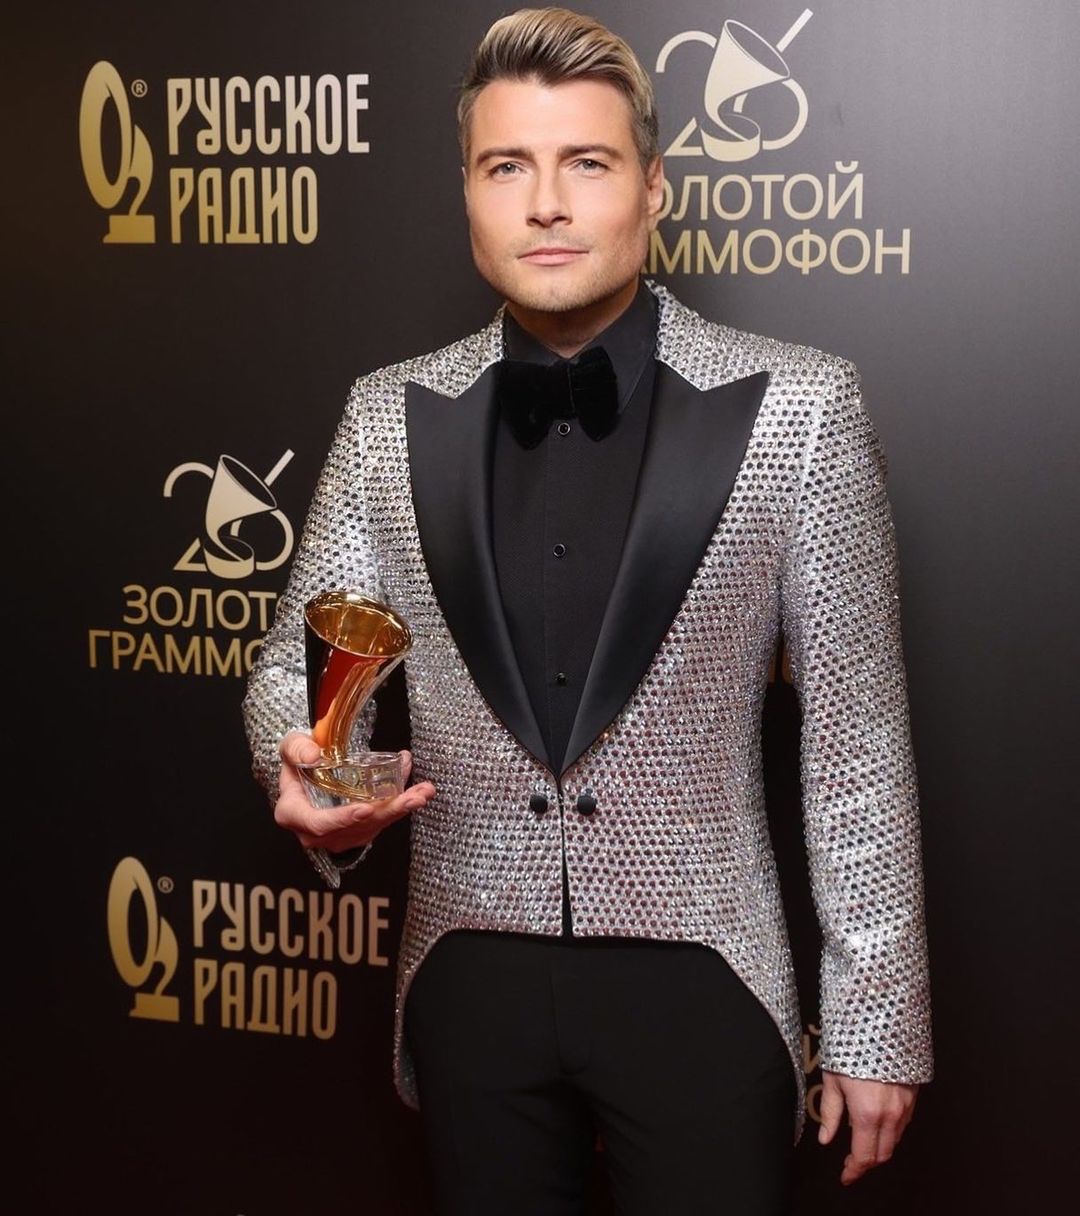 Иван Ургант посмеялся над нарядом Николая Баскова на премии «Золотой граммофон» 